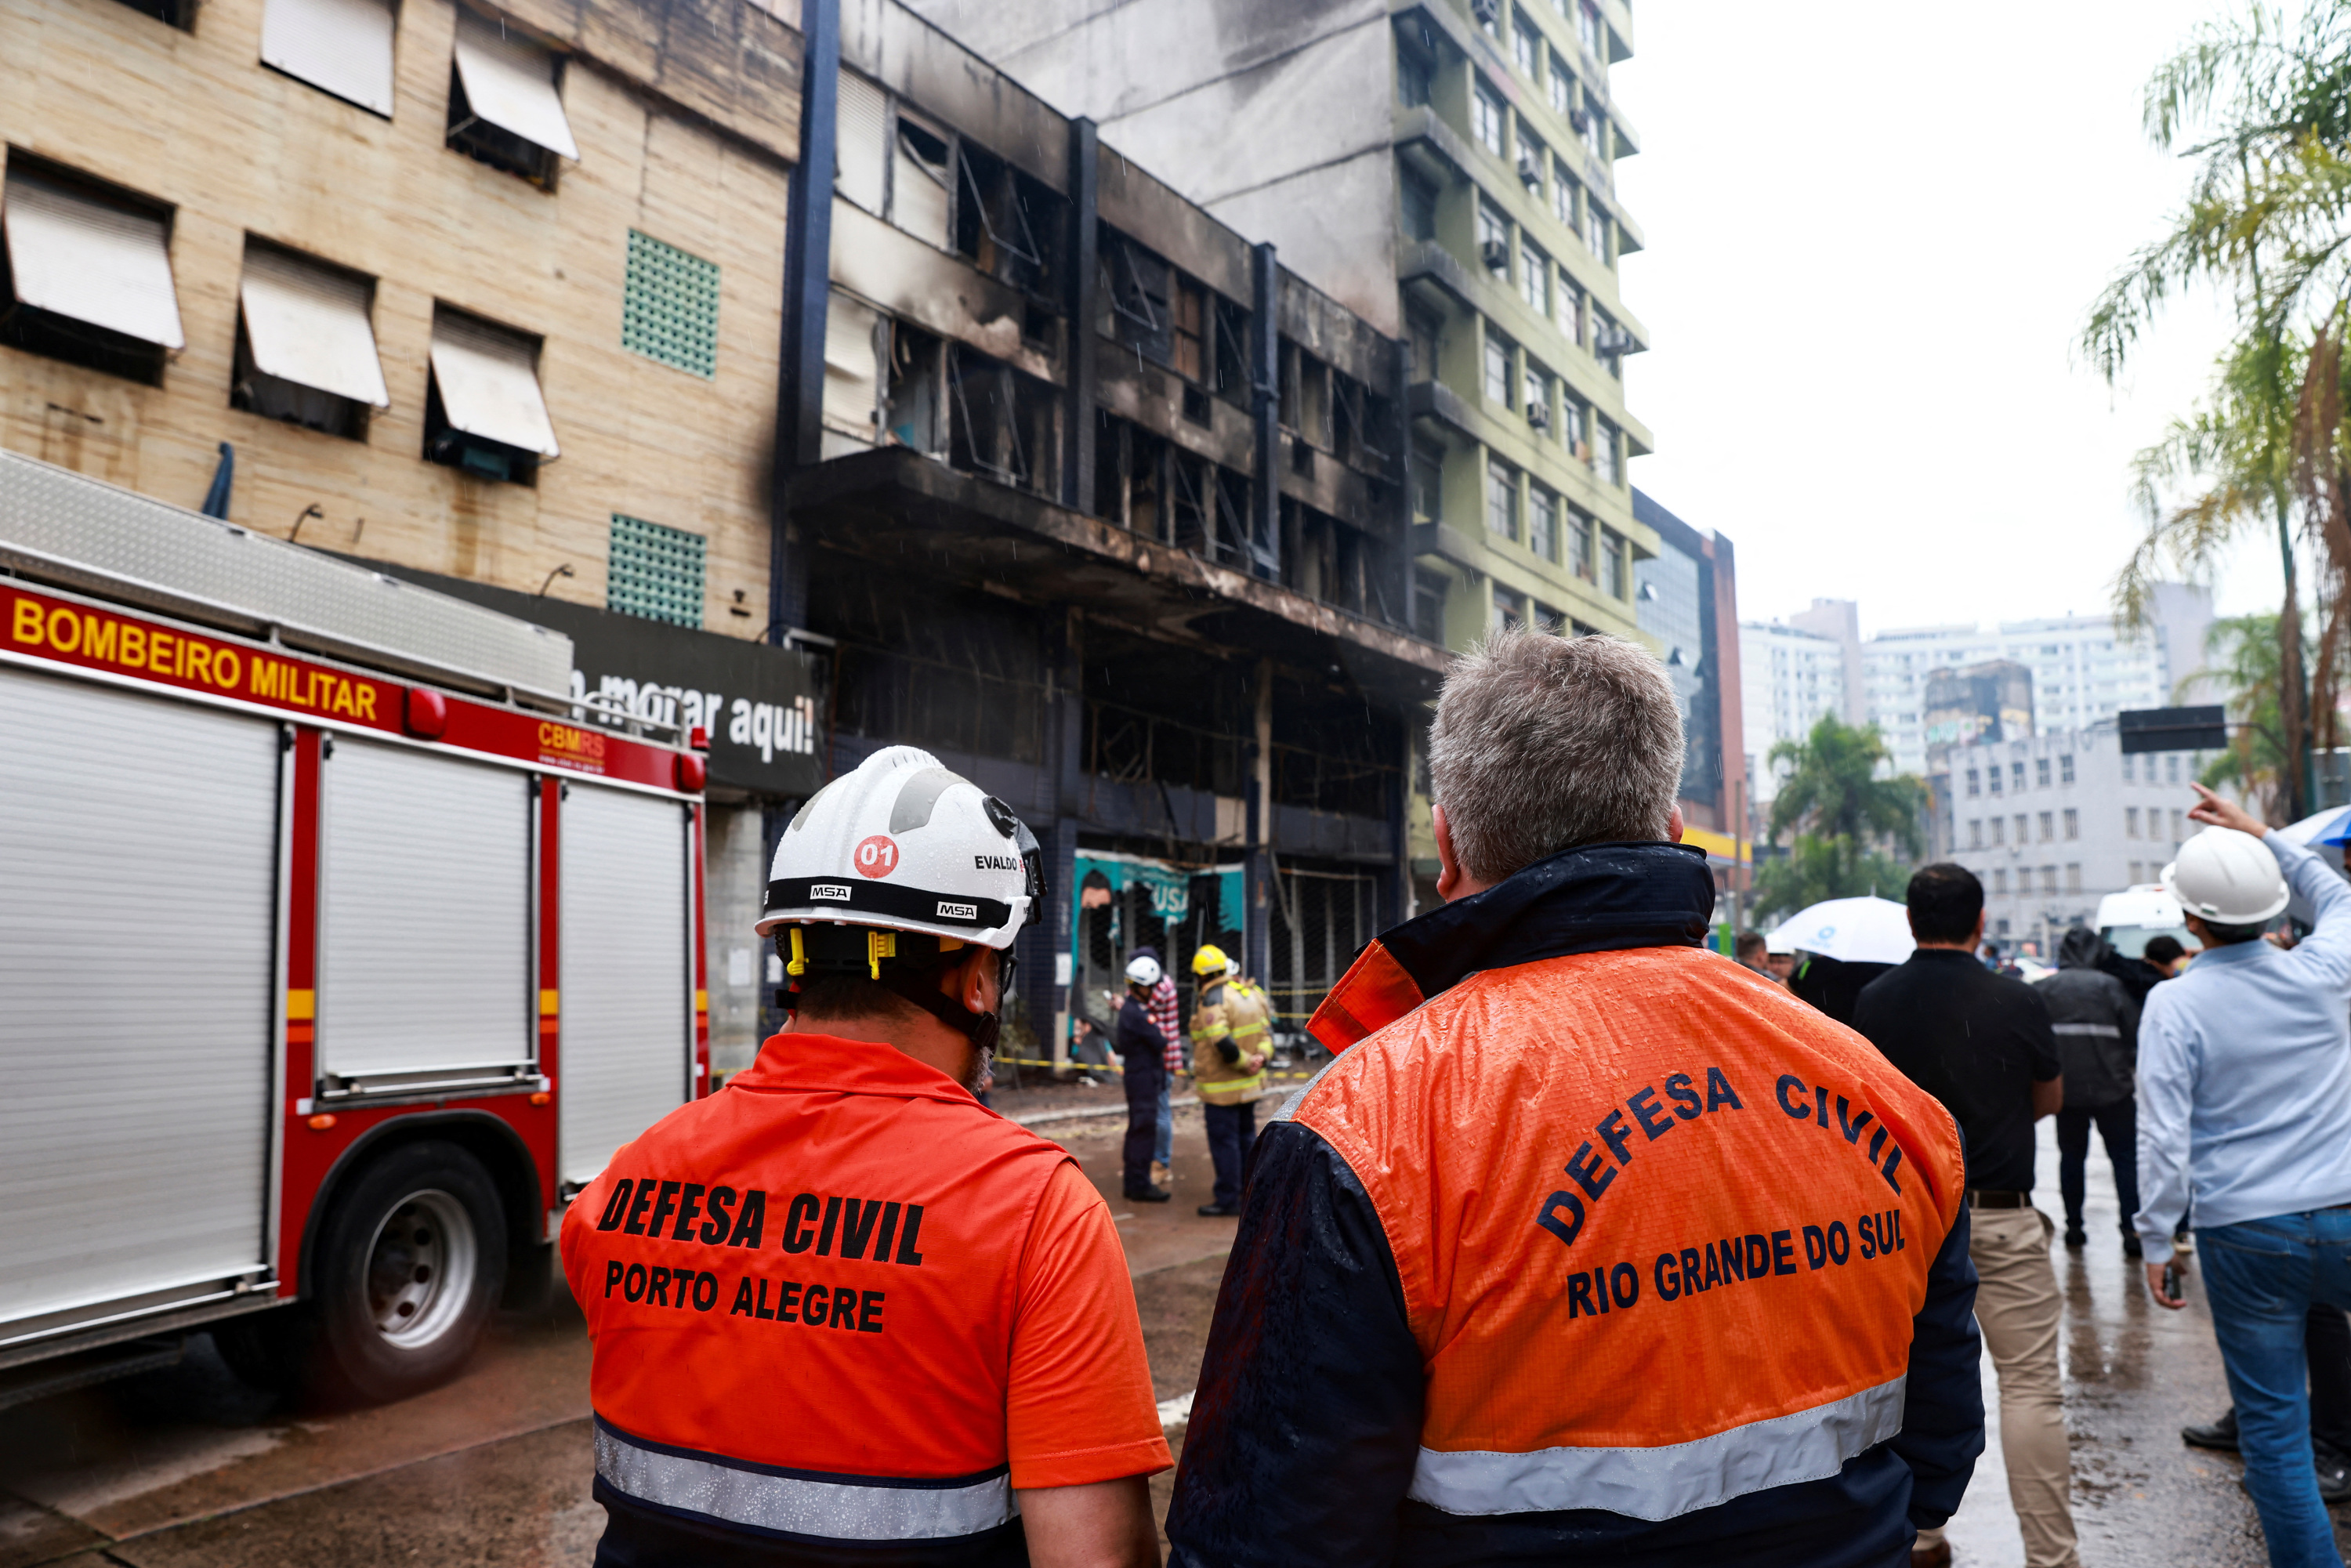 Brésil : au moins 10 personnes sont mortes dans l'incendie d'un hôtel hébergeant des sans-abris